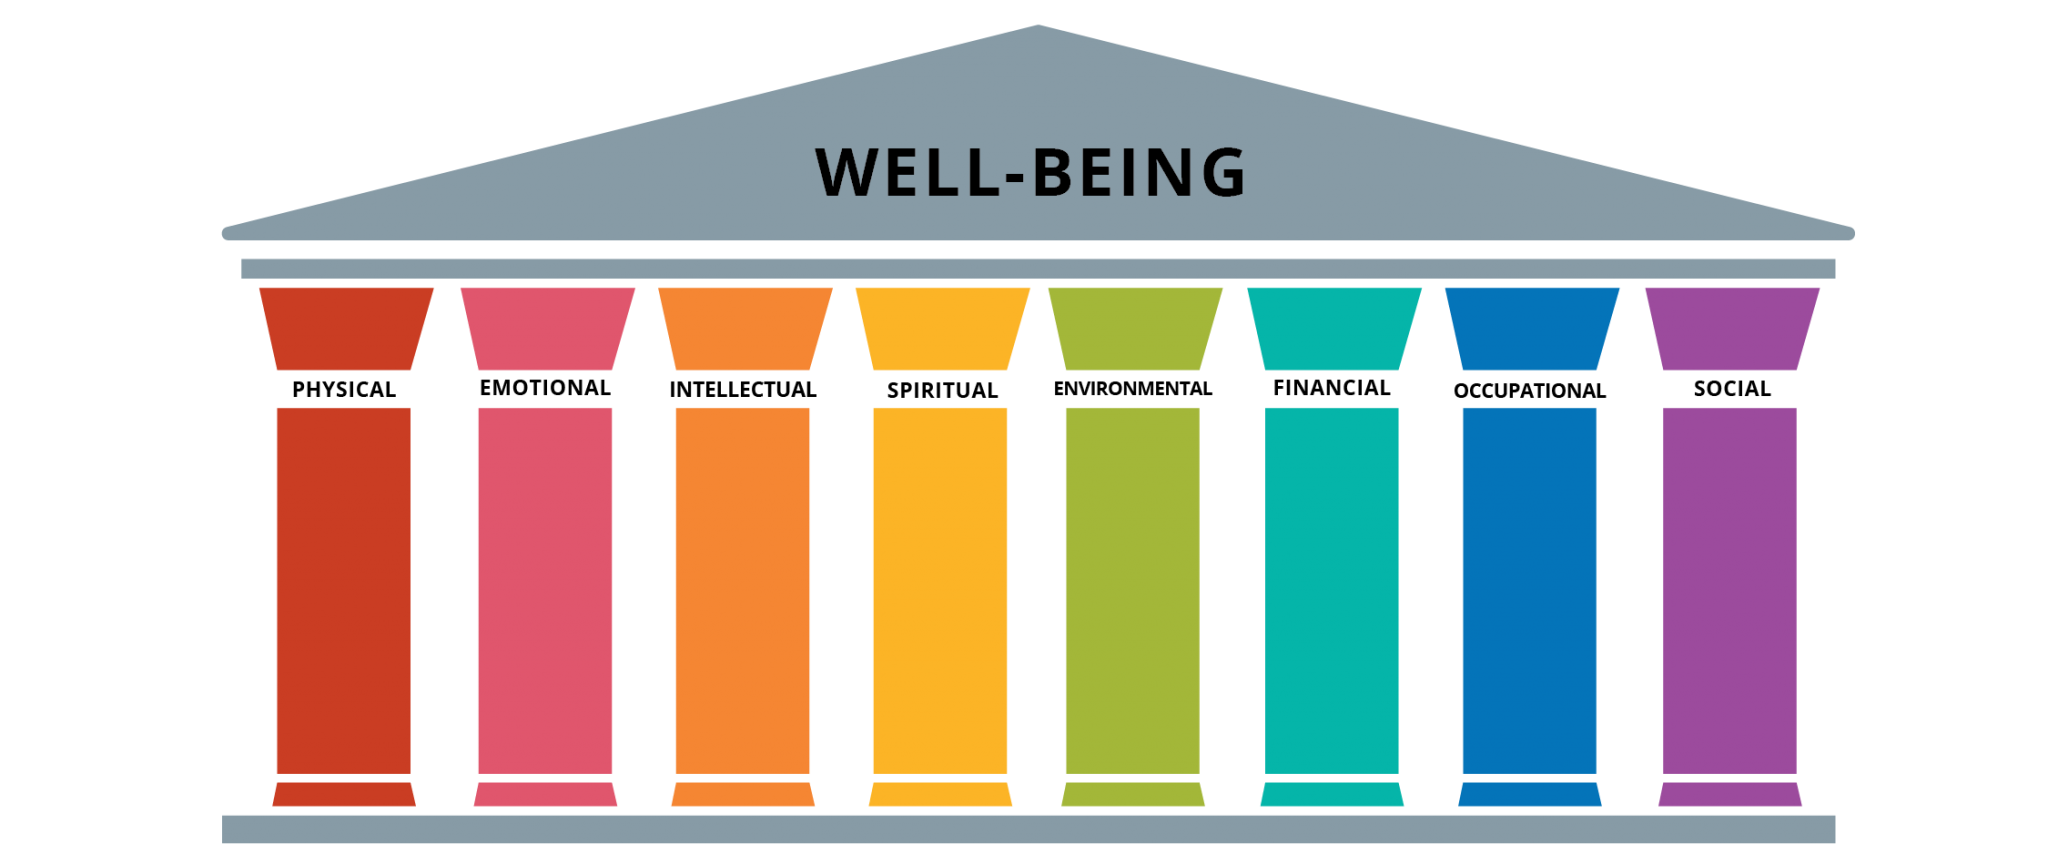 Pillars of Well-Being | Thrive @ Pitt